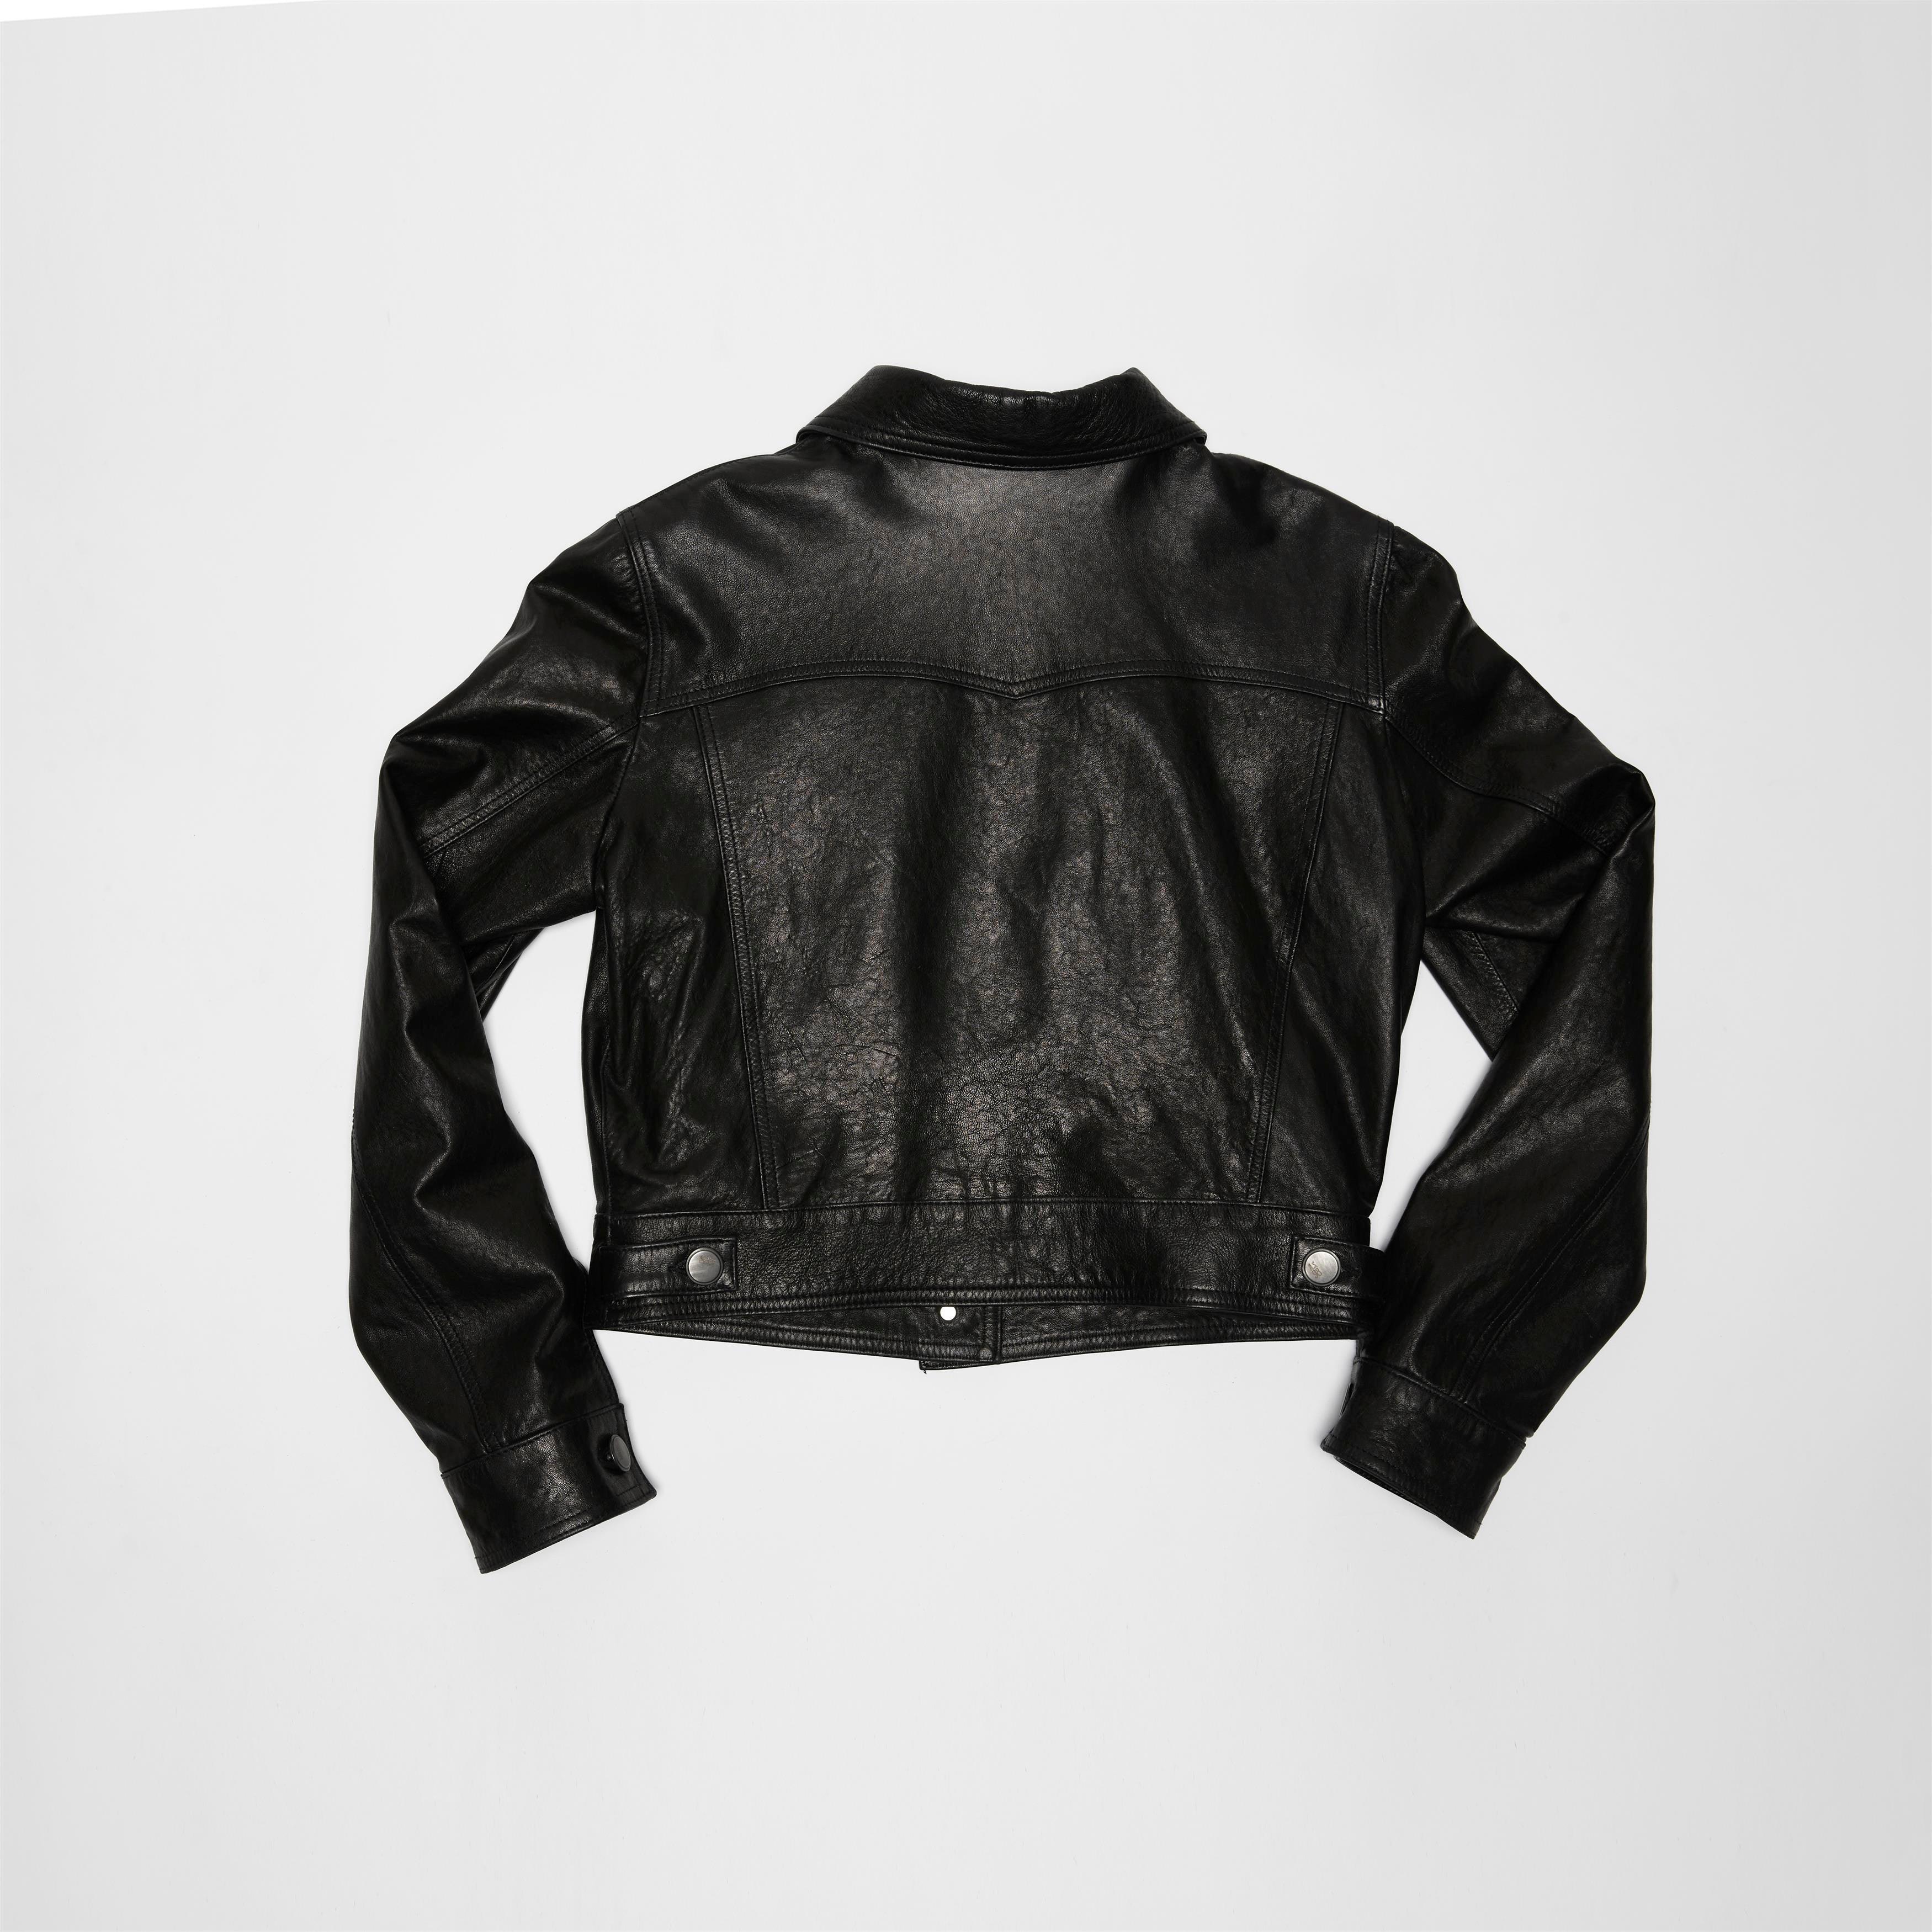 A.S.98 Leather Jacket - Jason - A.S. 98 - 